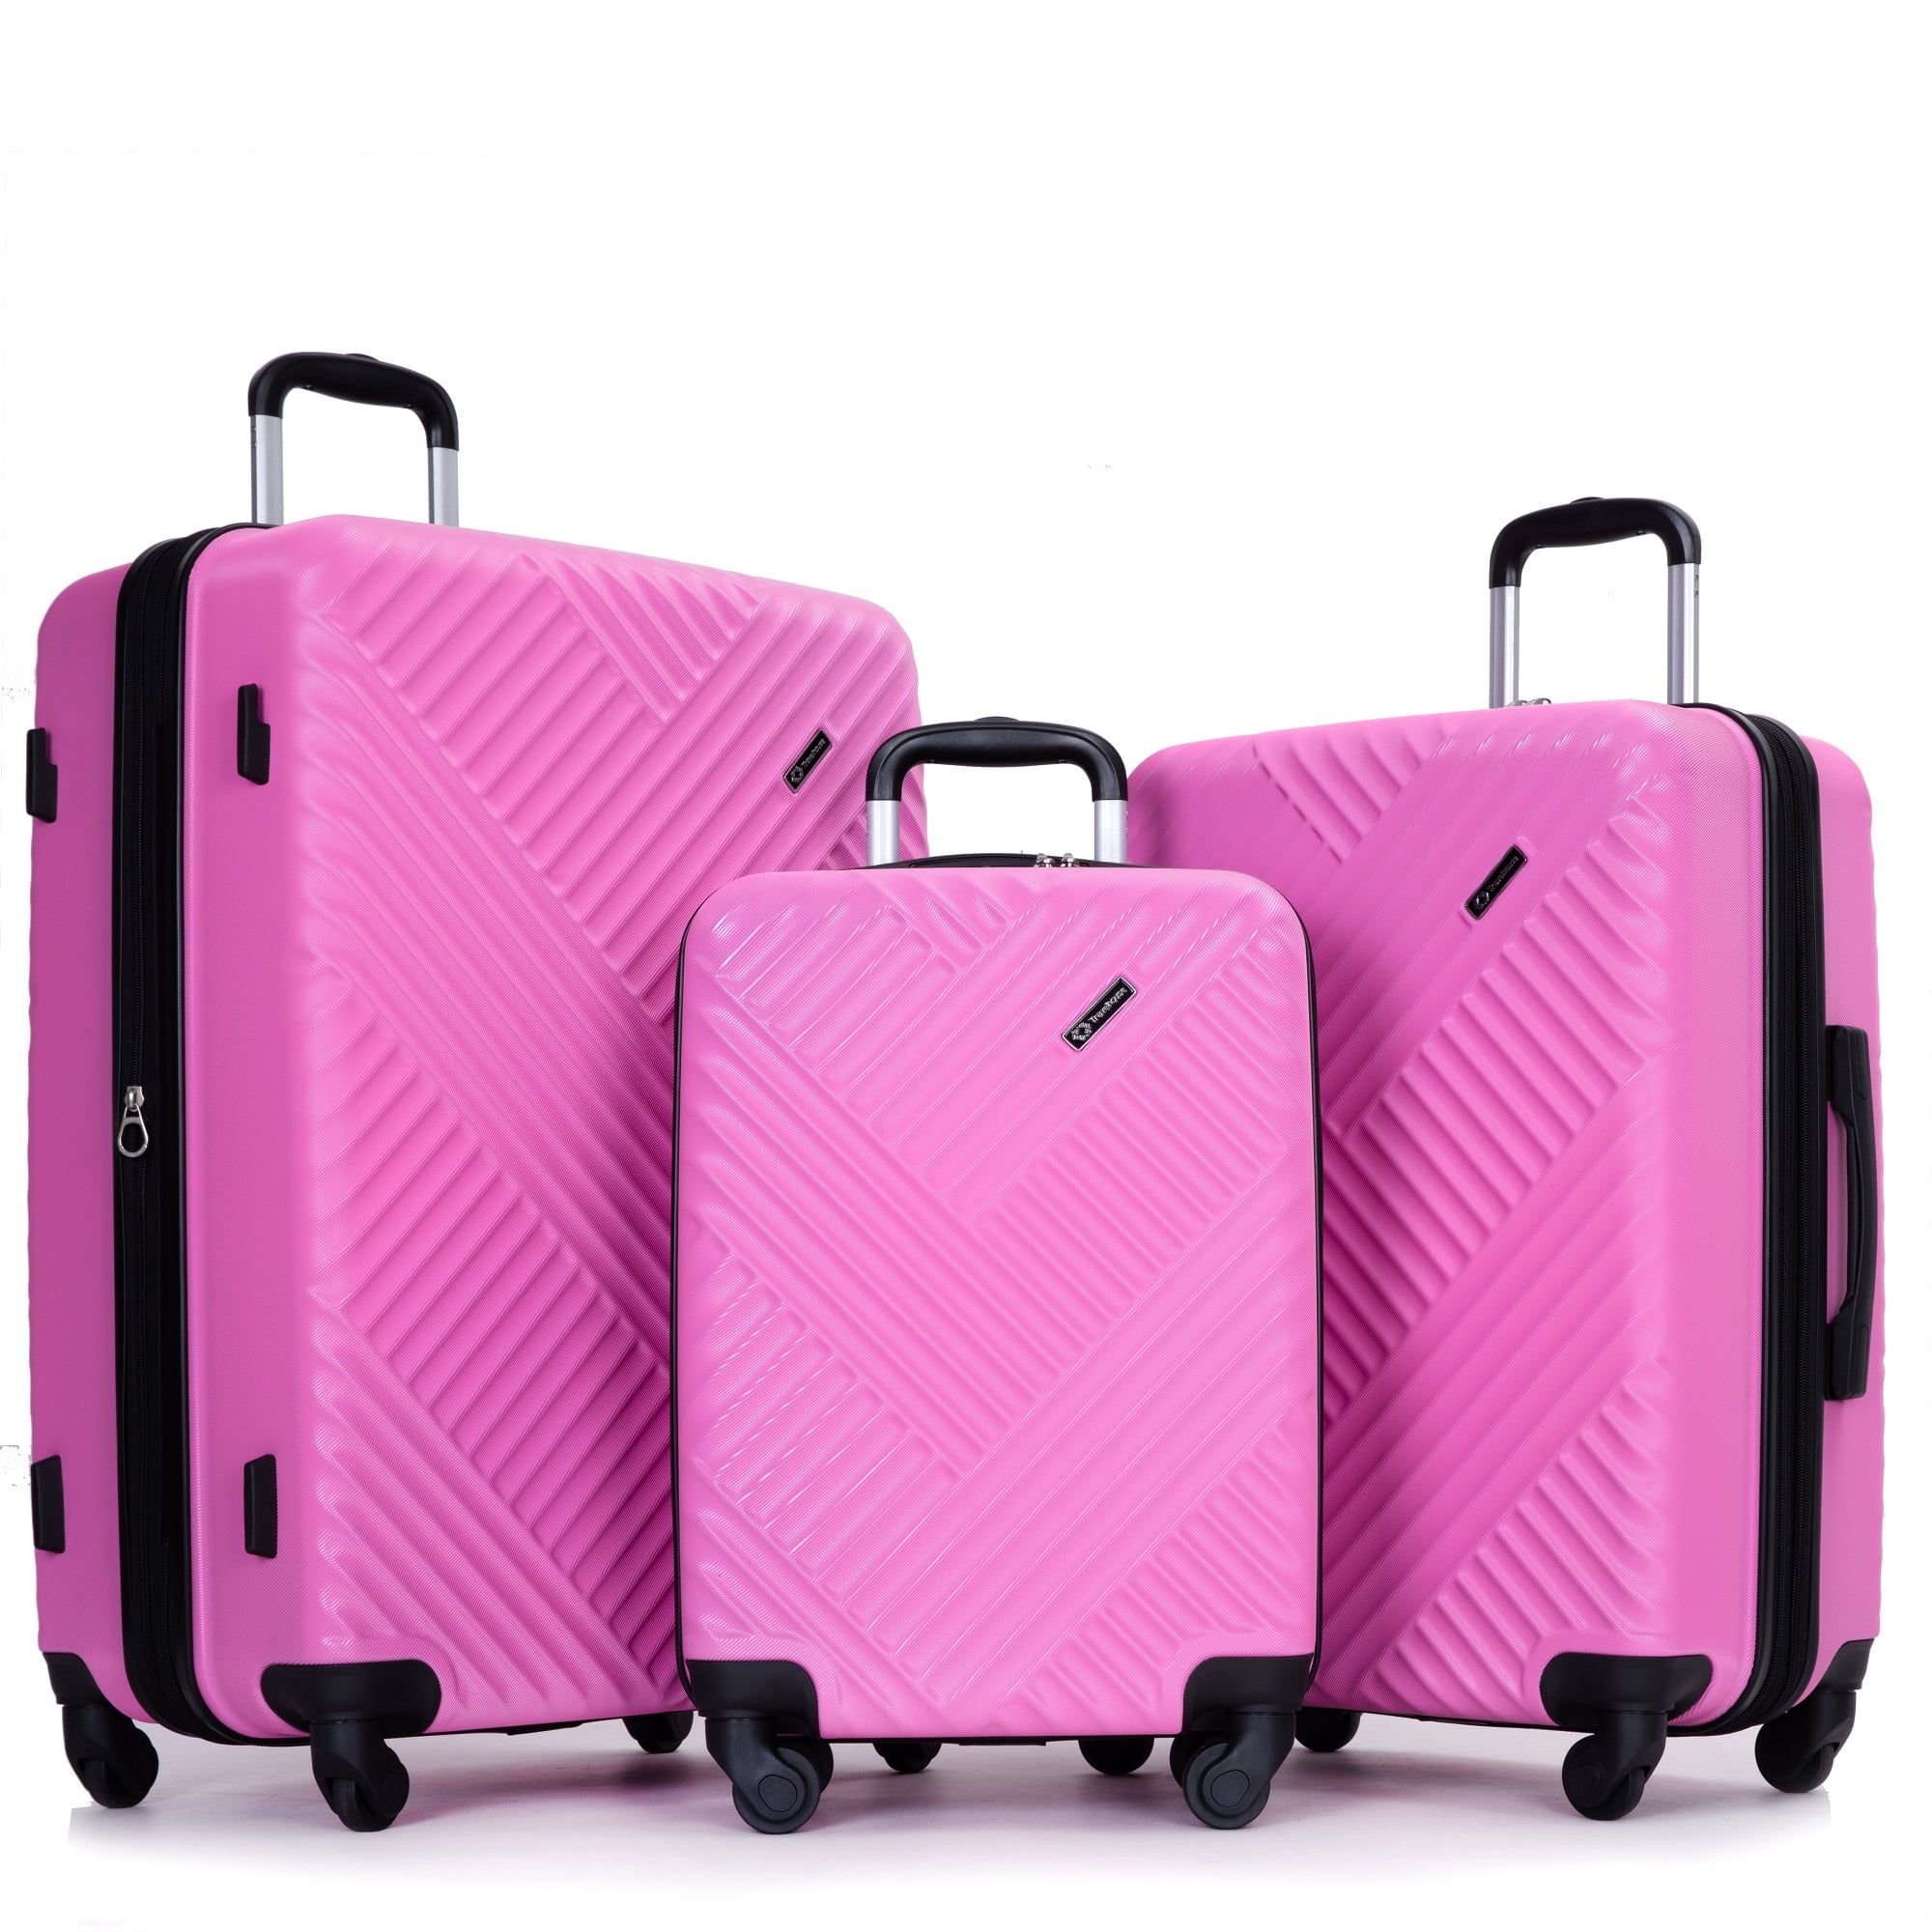 Travelhouse 3 Piece Hardside Luggage Set Expandable Hardshell Lightweight Suitcase with TSA Lock ... | Walmart (US)